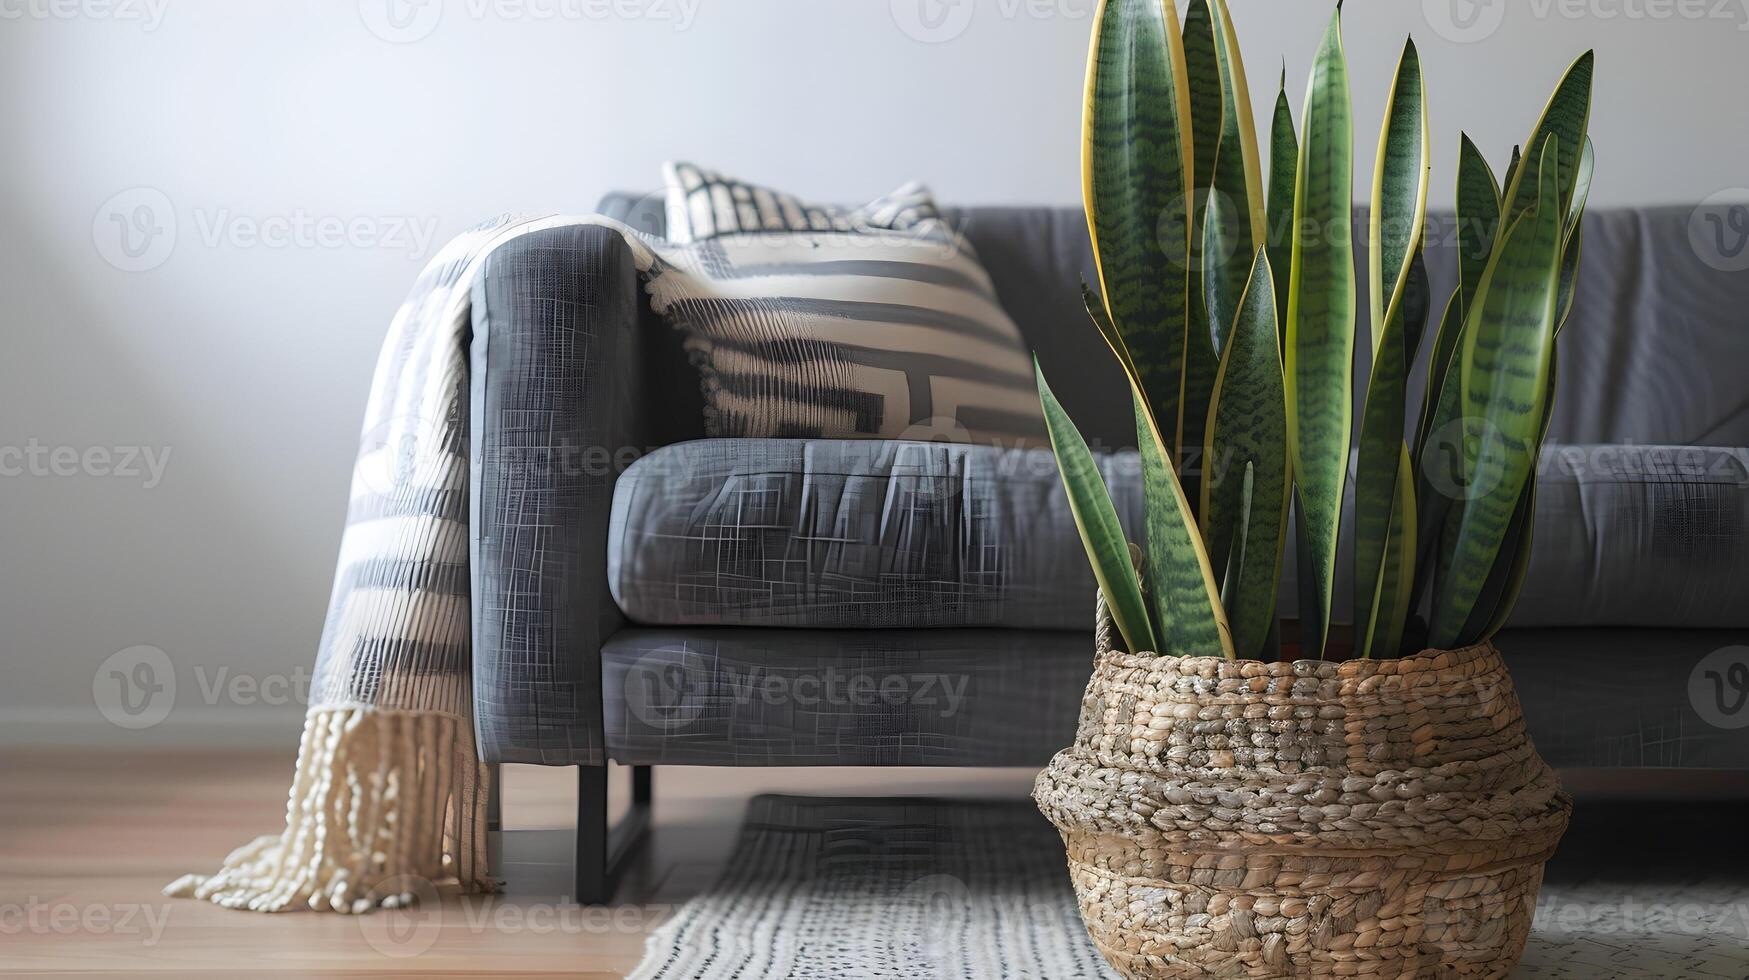 accogliente e invitante di ispirazione scandinava vivente camera con lussureggiante piante d'appartamento e confortevole divano arredamento foto